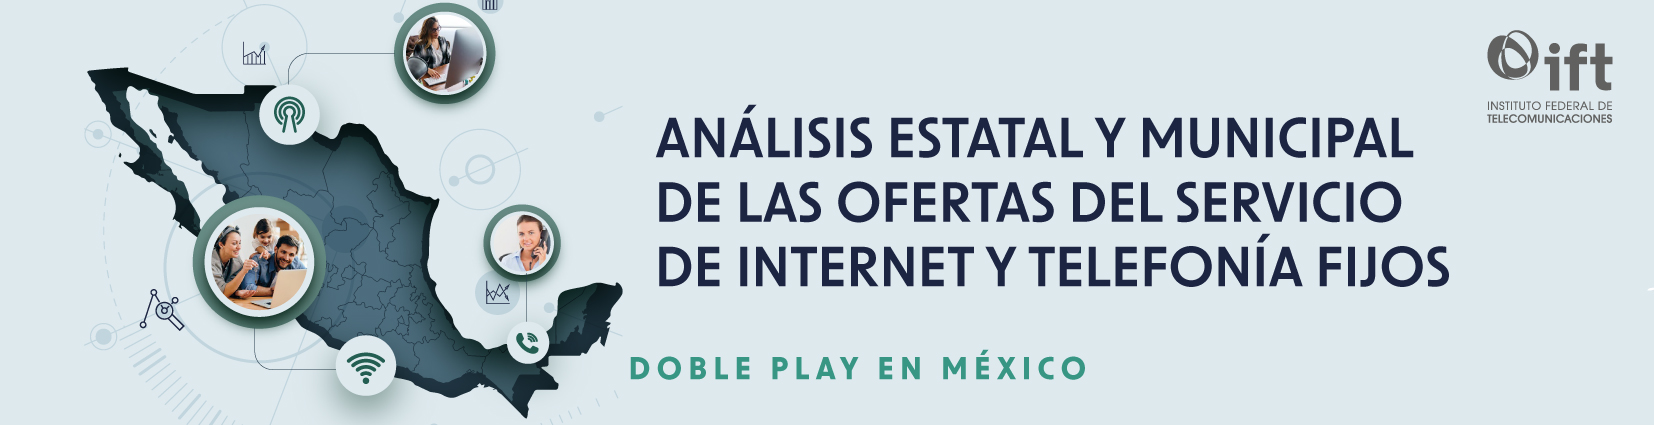 Portada del Análisis Estatal y Municipal de las Ofertas del Servicio de Internet y Telefonía Fijos – Doble Play en México